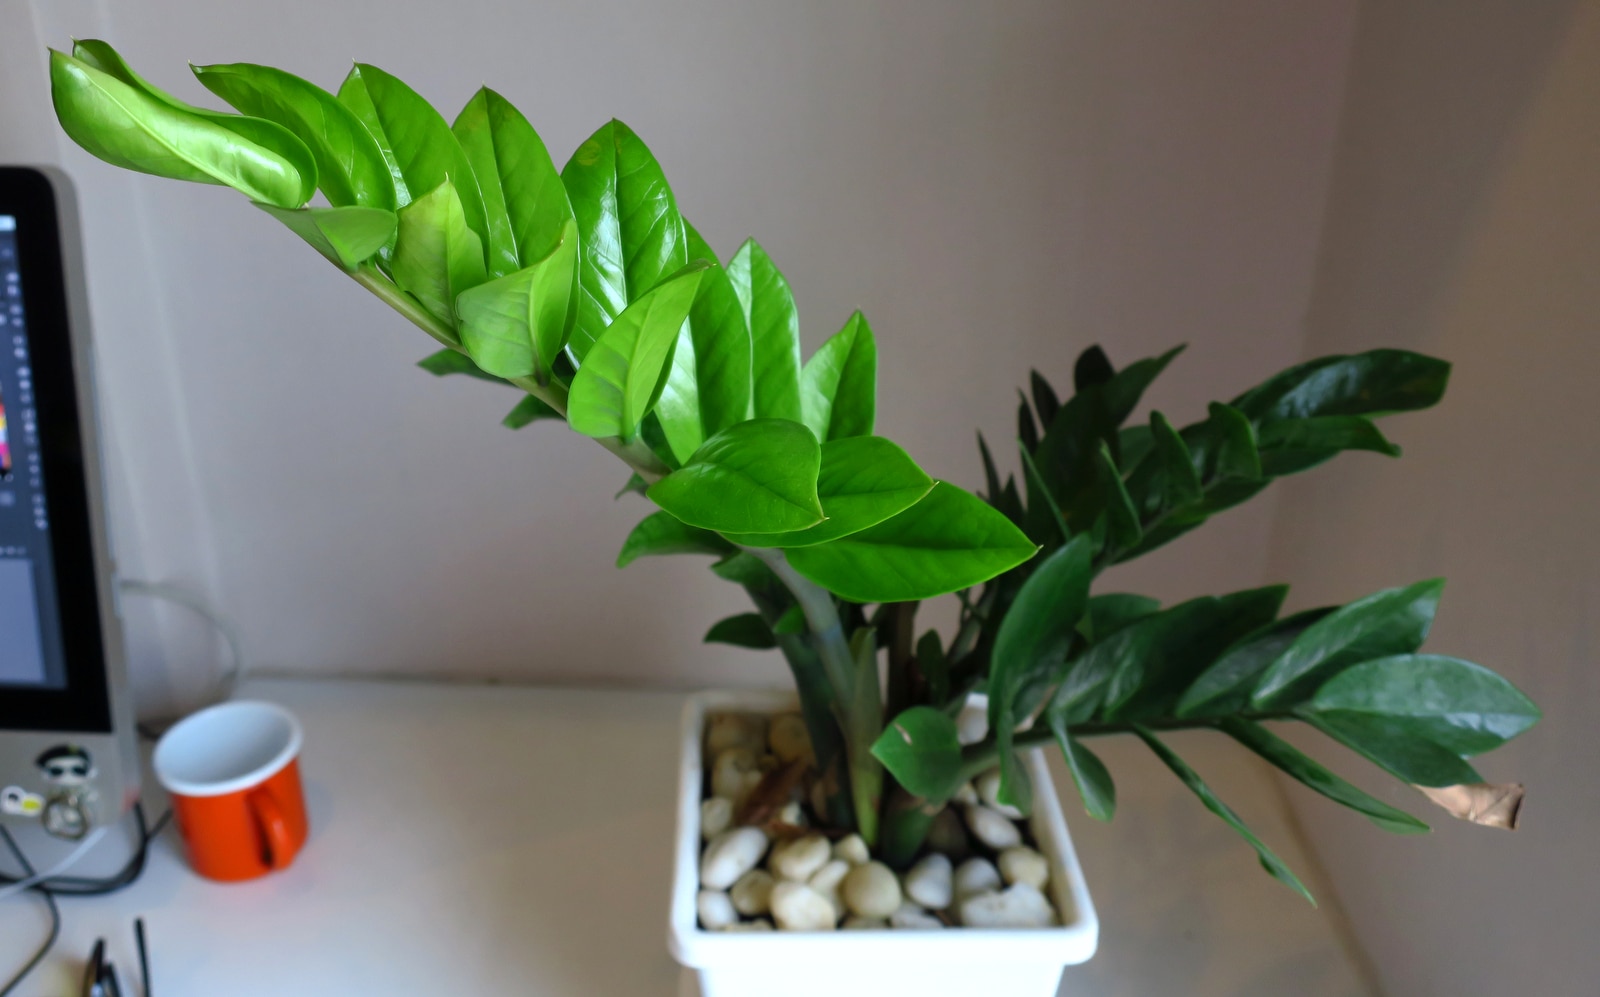 Zamioculca cultivada em vaso no escritório. A planta possui estrutura ereta com folhas verdes e brilhantes.